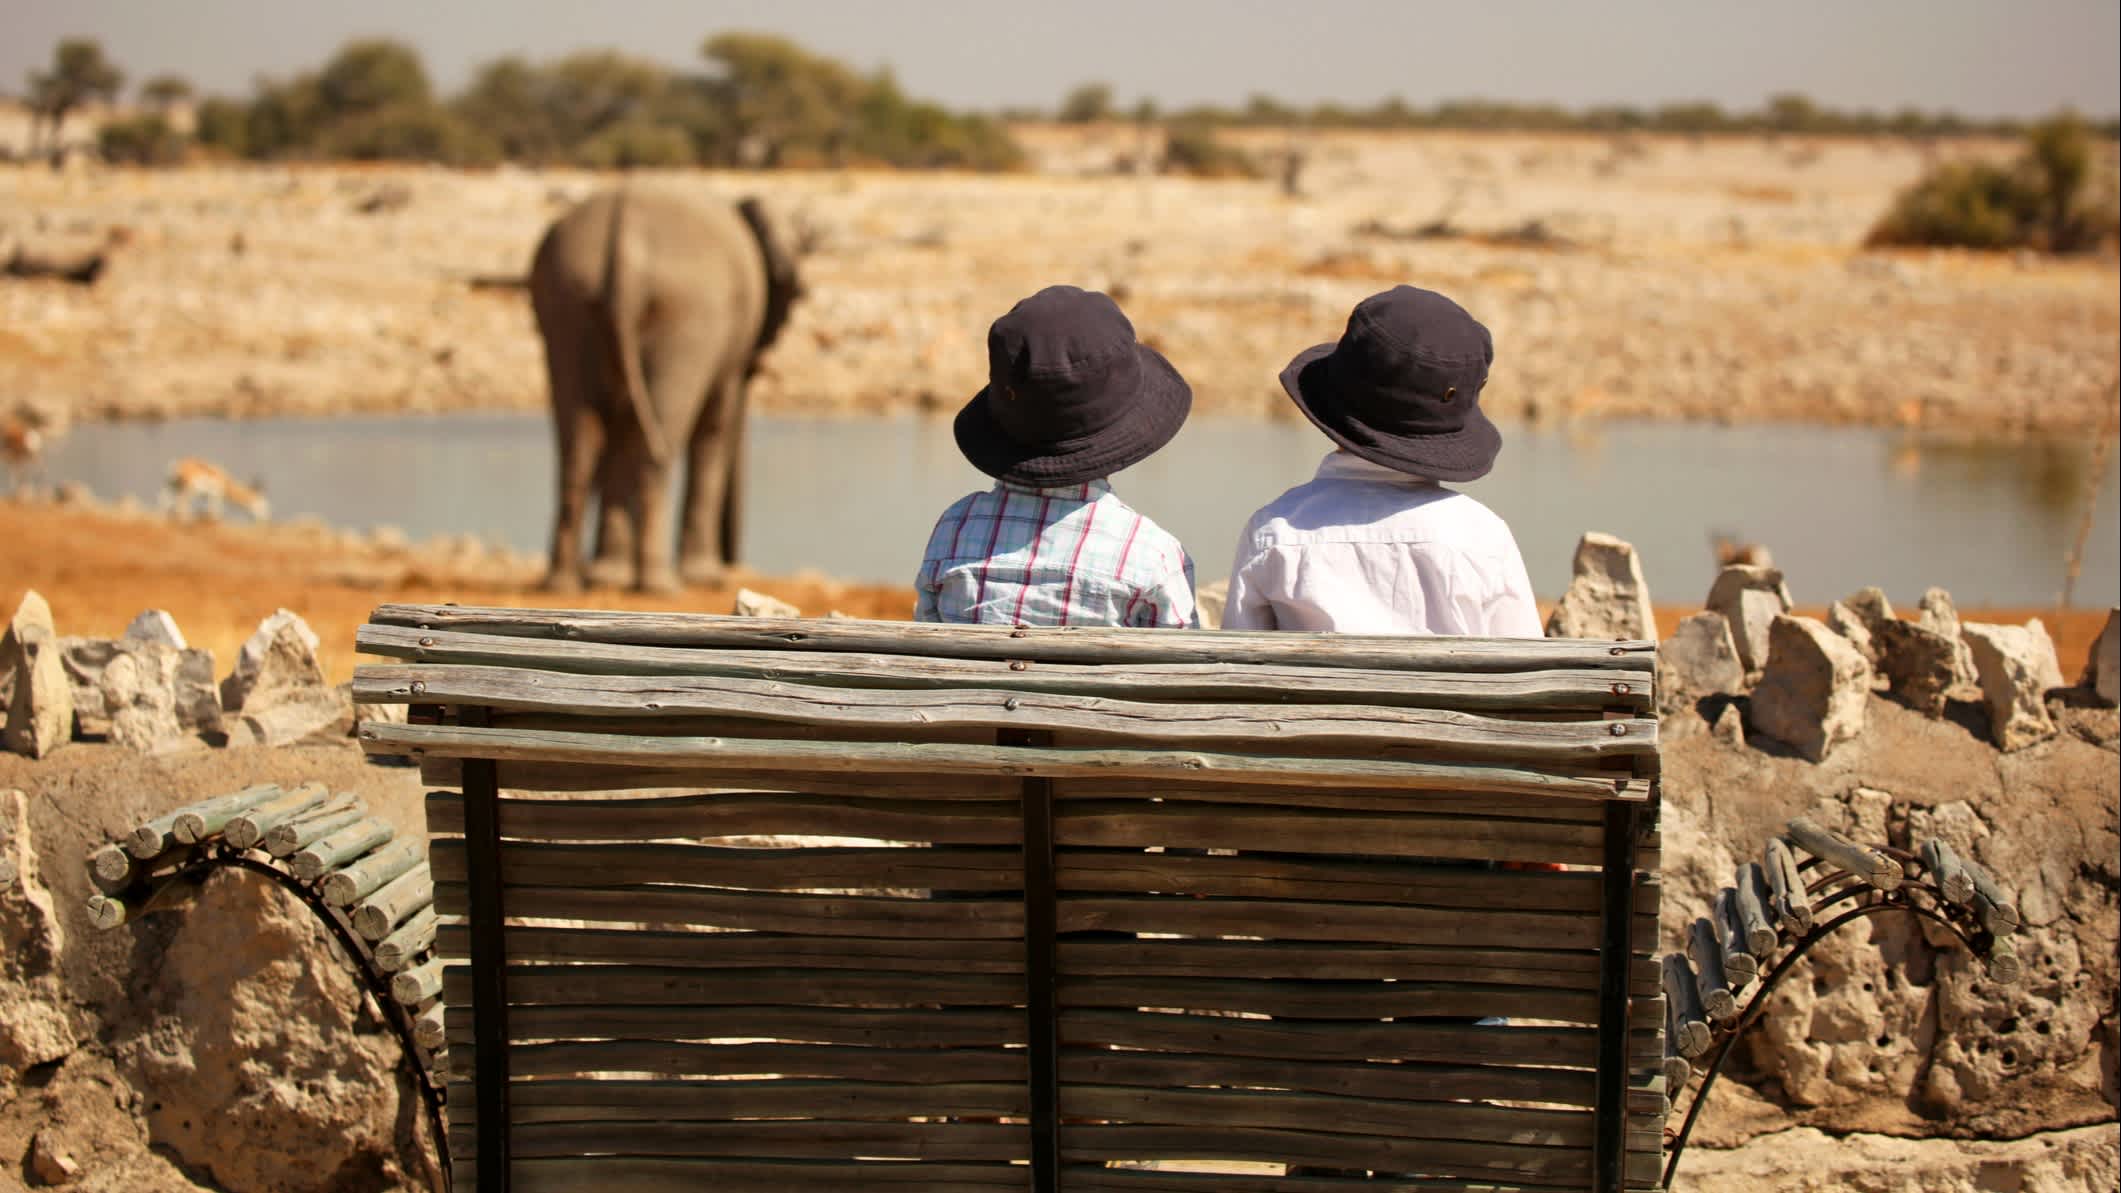 Kinder beobachten Elefanten im Wasserloch Okaukuejo im Etosha, Namibia.

